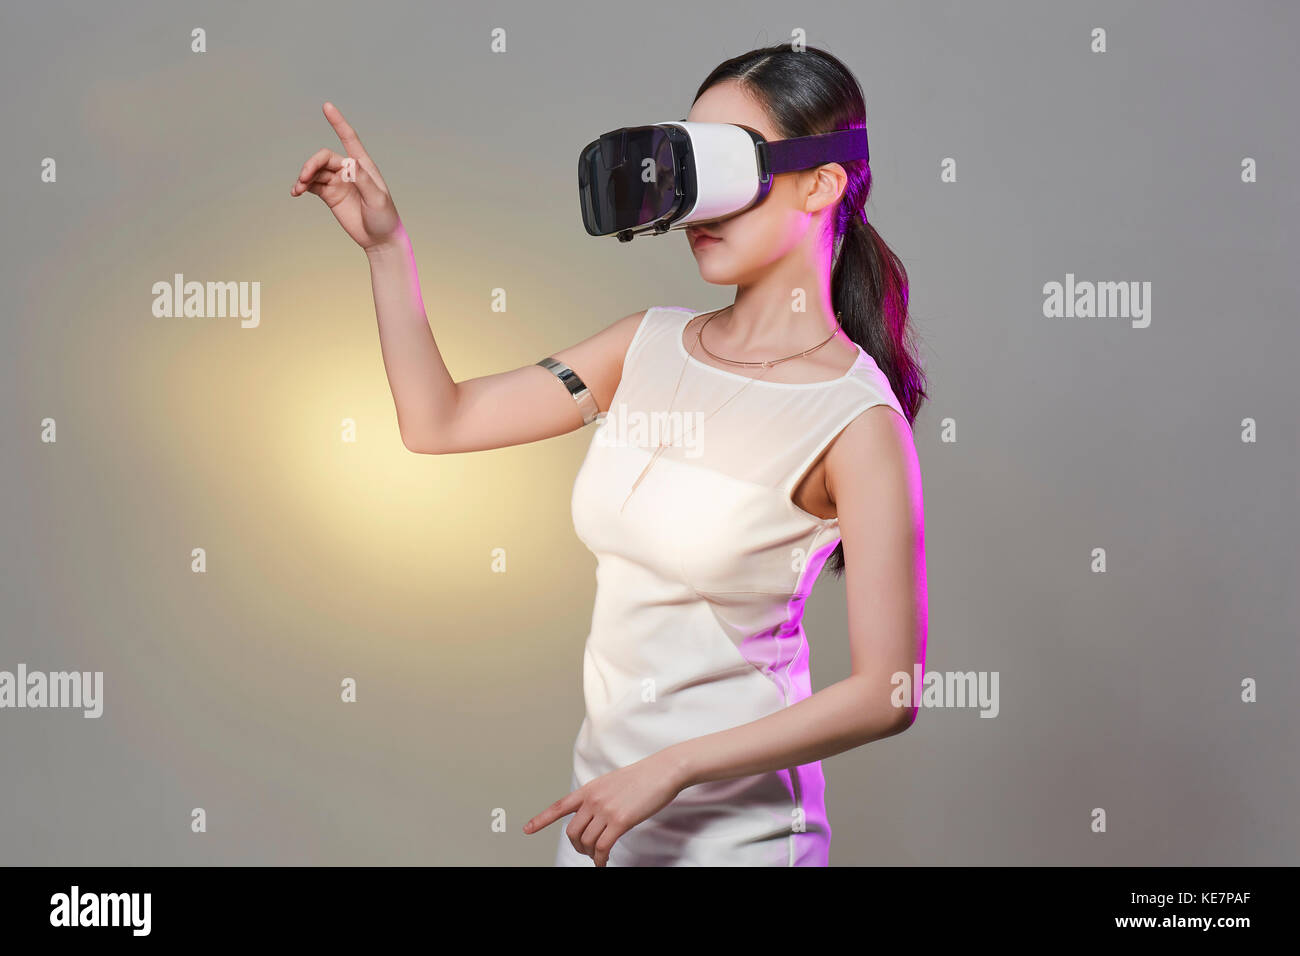 Vue latérale du jeune femme avec casque de réalité virtuelle posing Banque D'Images